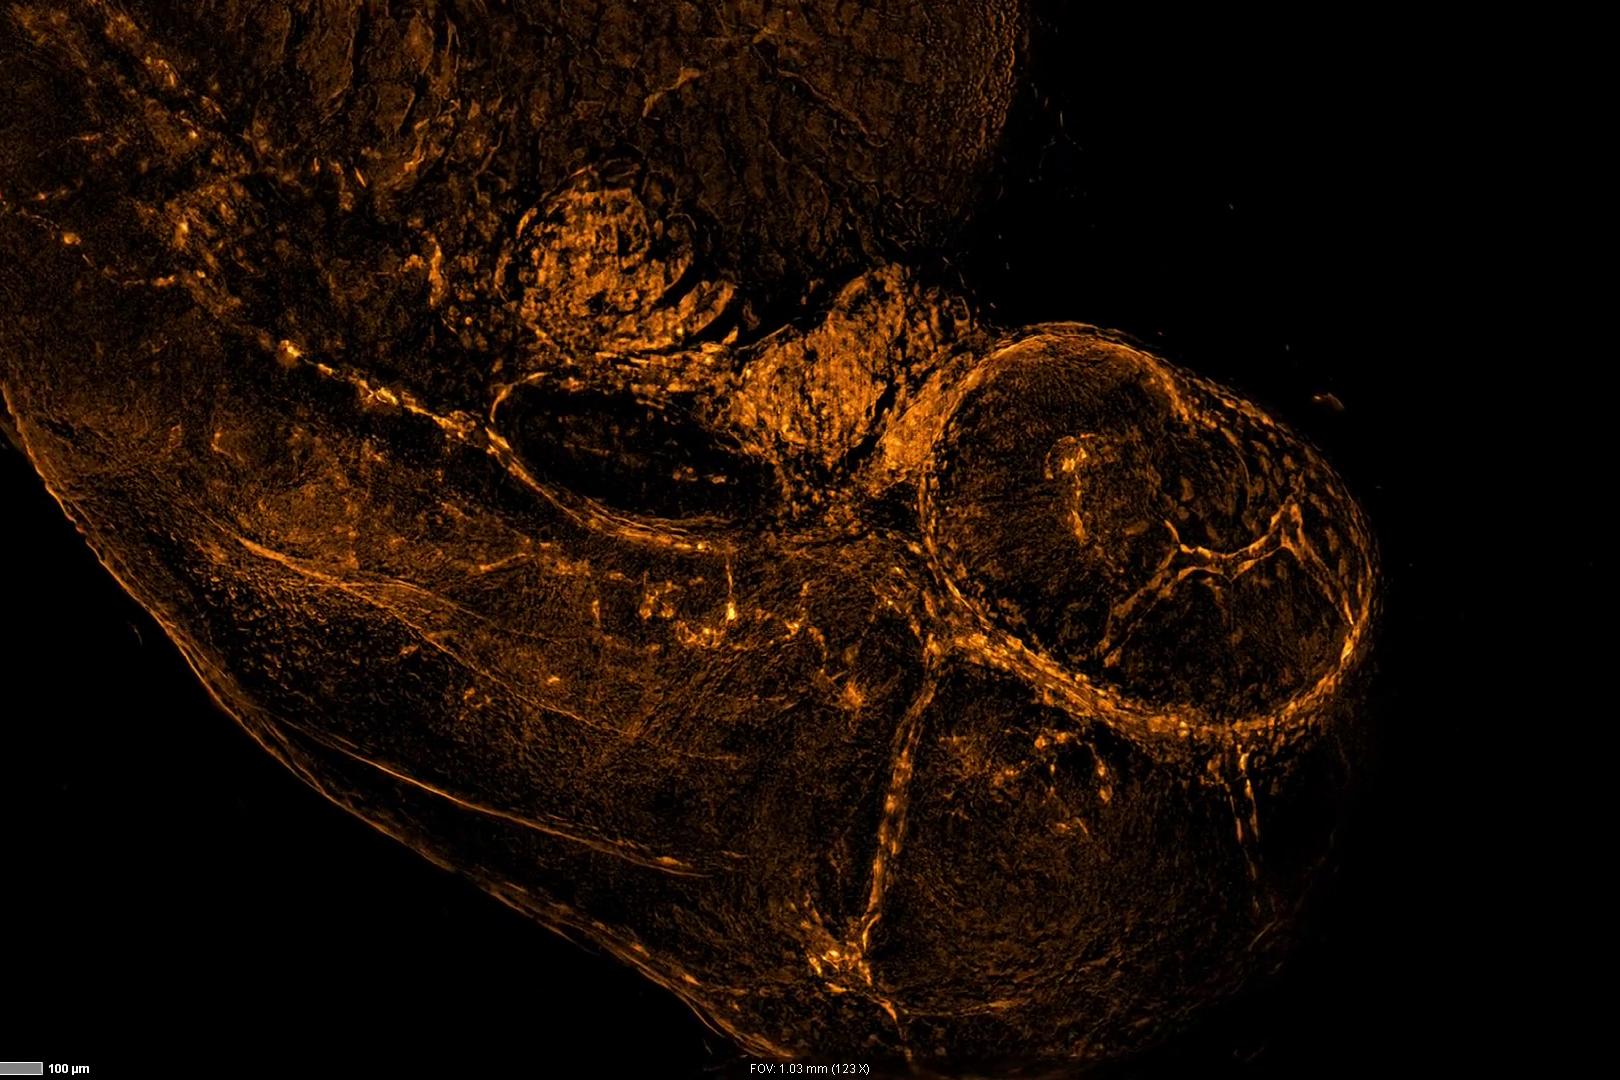 Se captaron imágenes en 3D de un embrión de pez cebra con expresión de marcador vascular fli1-EGFP. La figura muestra la máxima proyección de intensidad del conjunto de datos del Z-stack en mosaico. Objetivo: Plan-Neofluar 10× / 0,3. Muestra cortesía de Haass Lab (MCN, Universidad de Múnich, Alemania)